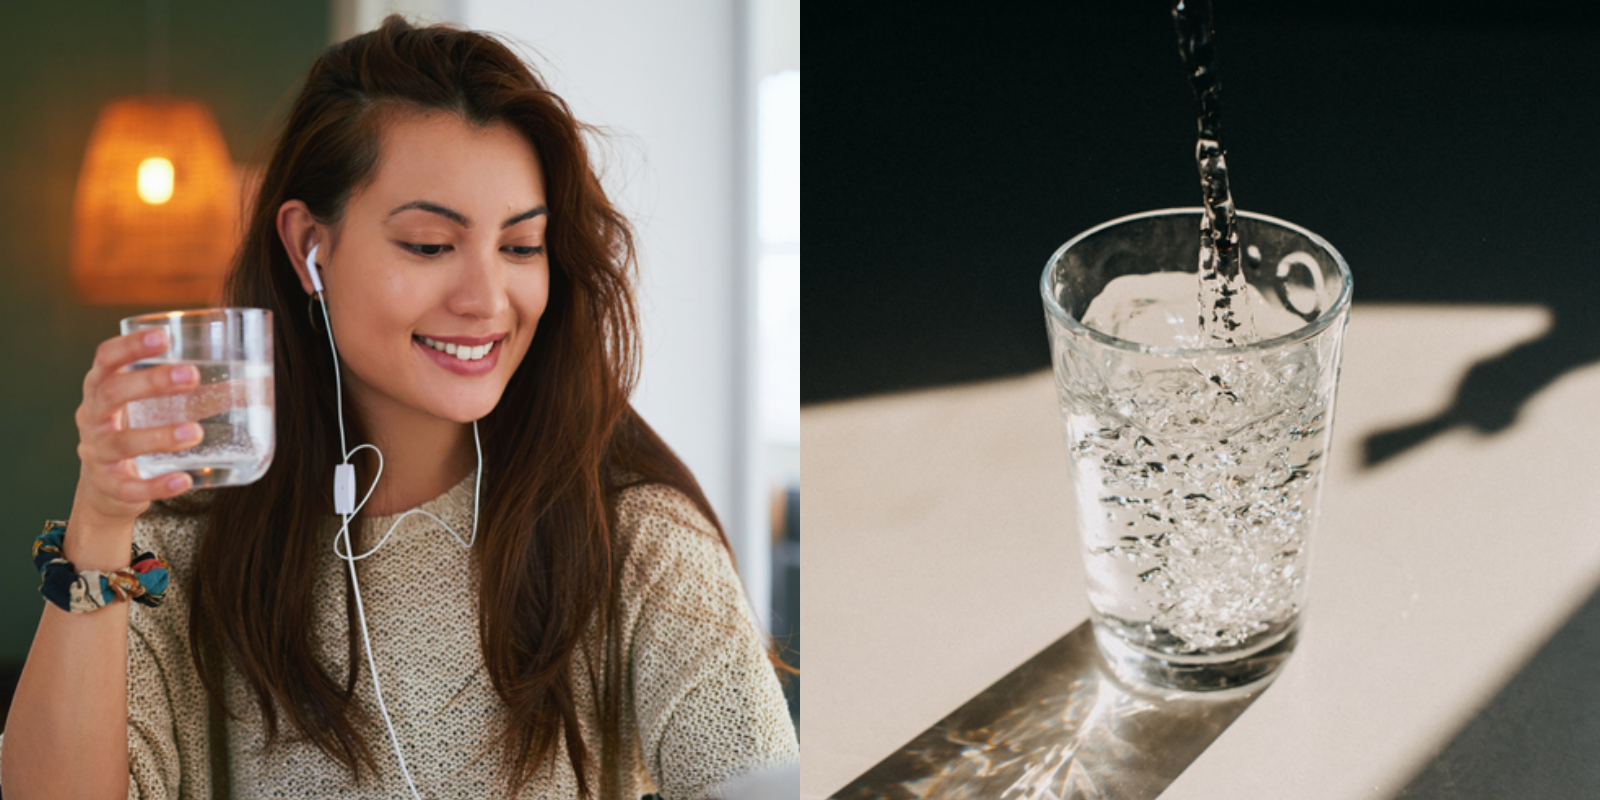 健康 喝水 法11招 學會一生受用 喝水 喝對了從此扭轉瘦美體質